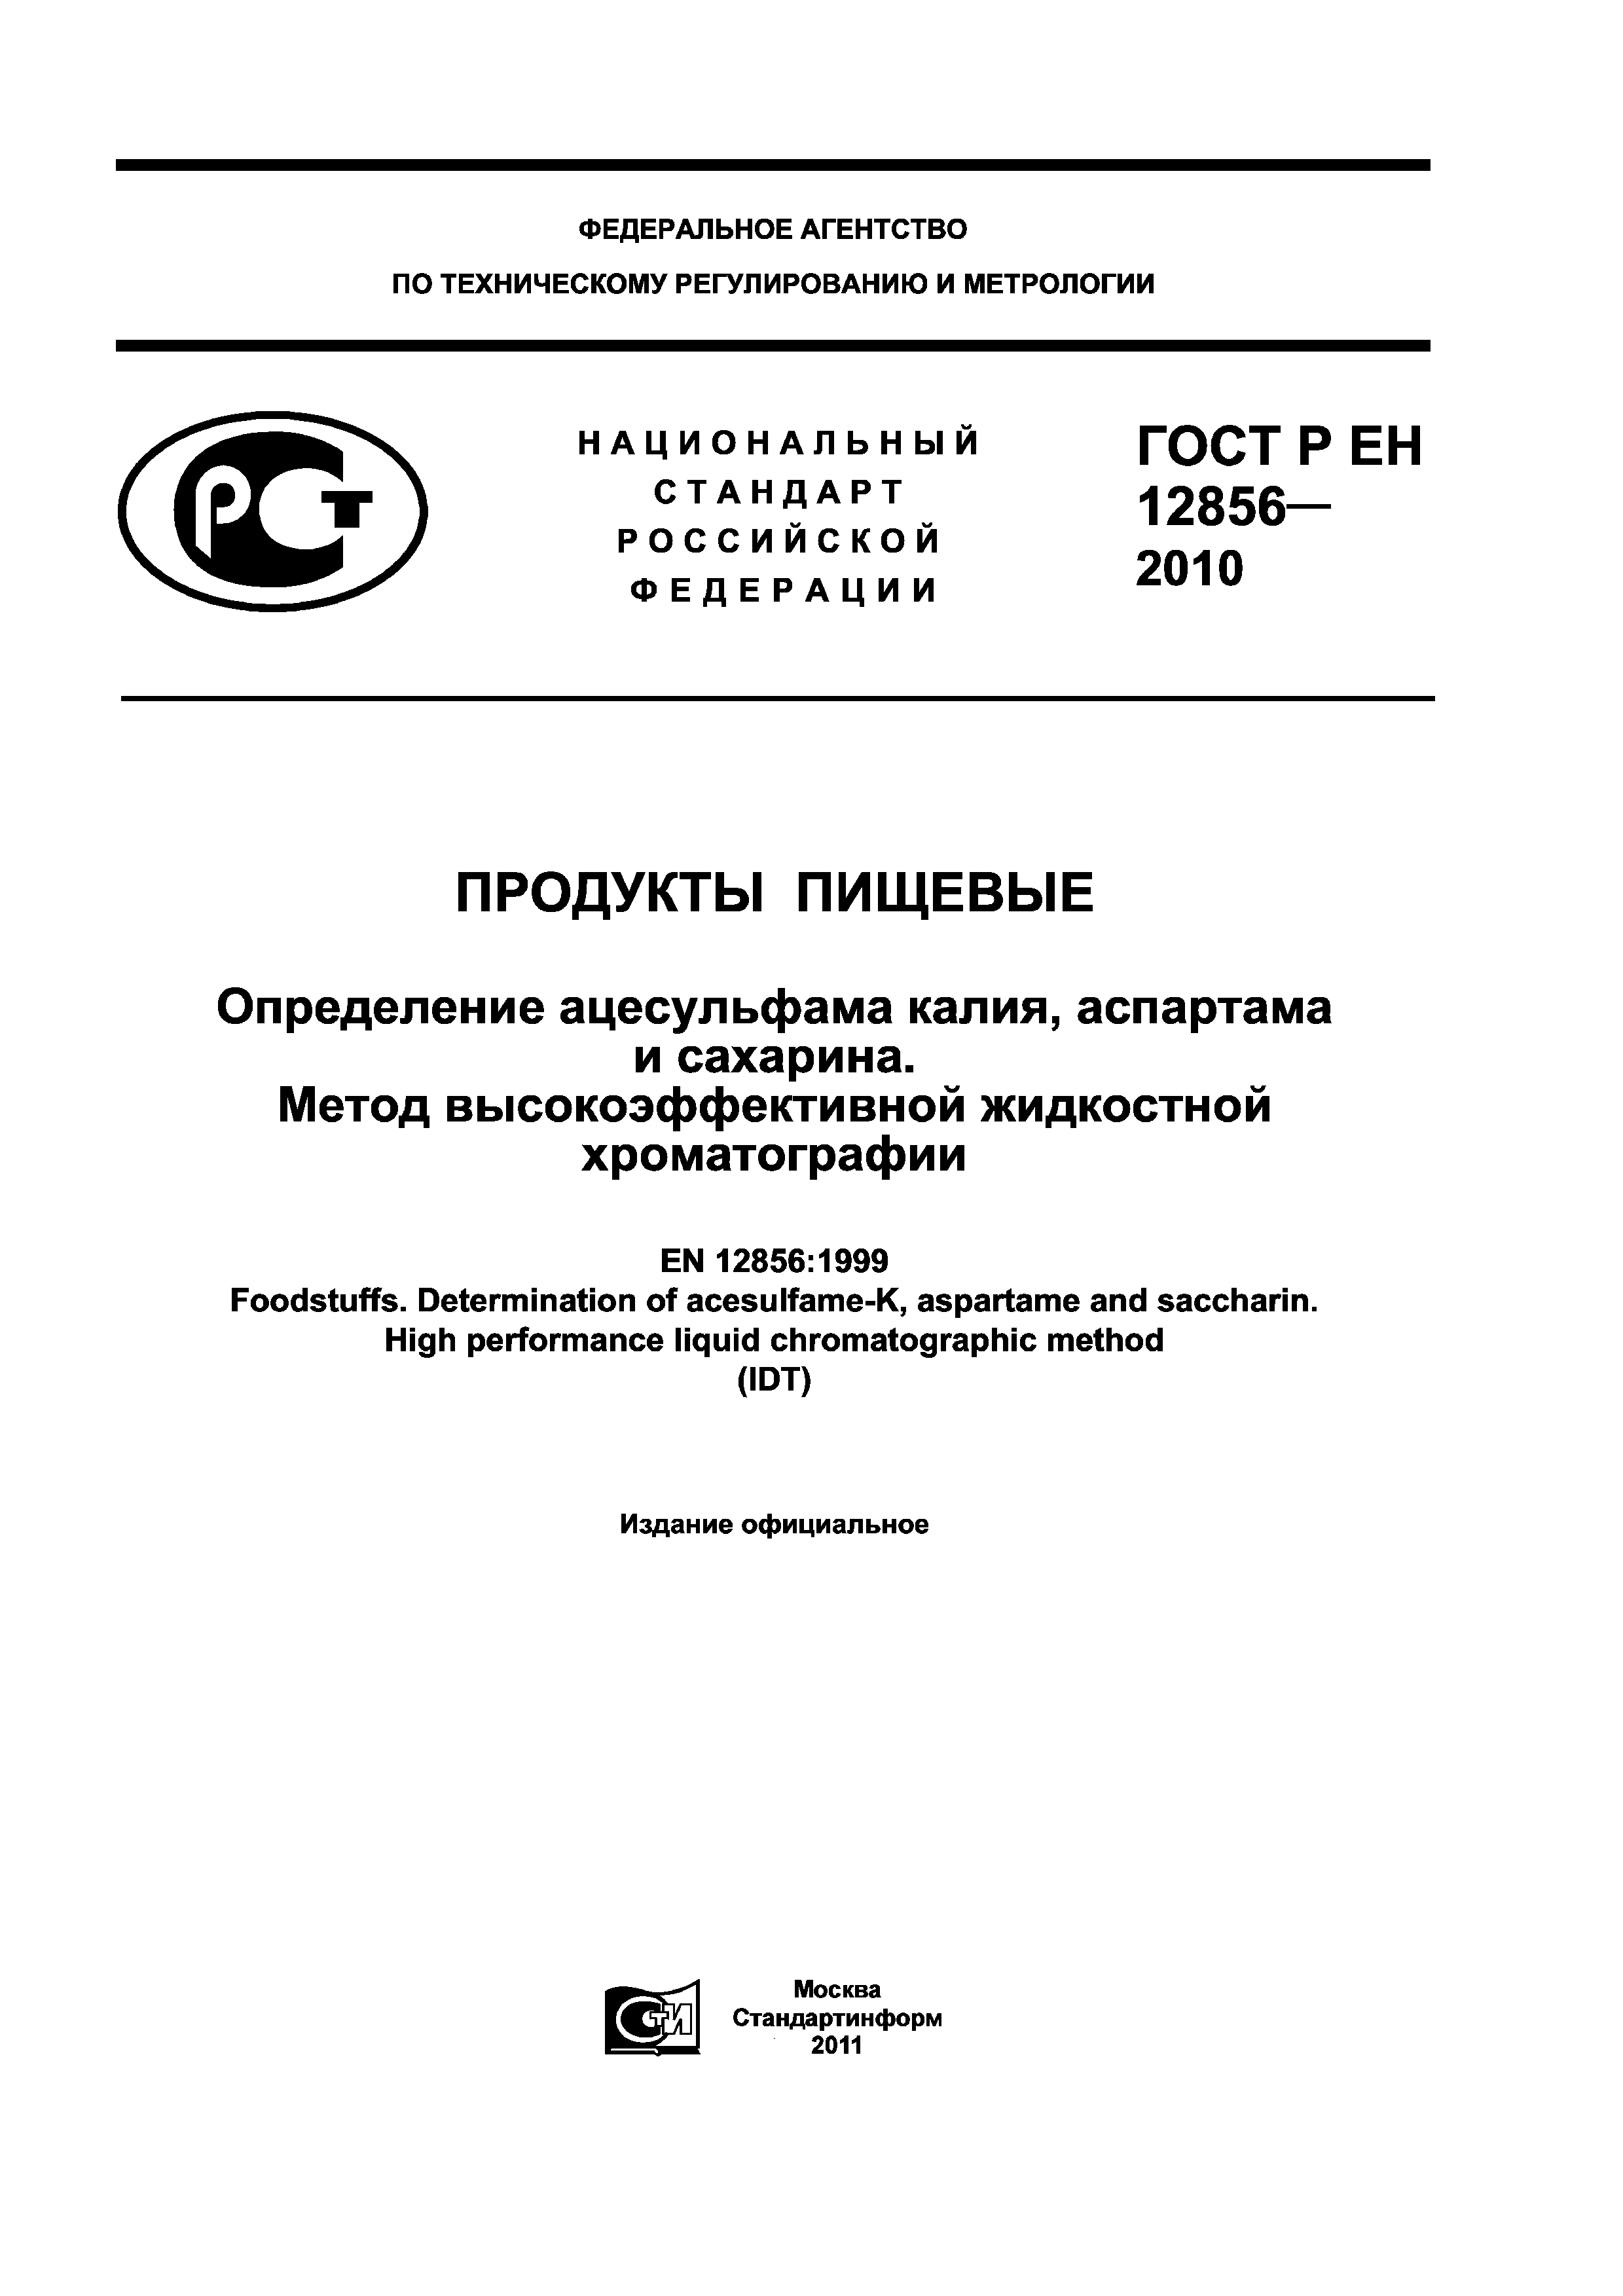 ГОСТ Р ЕН 12856-2010